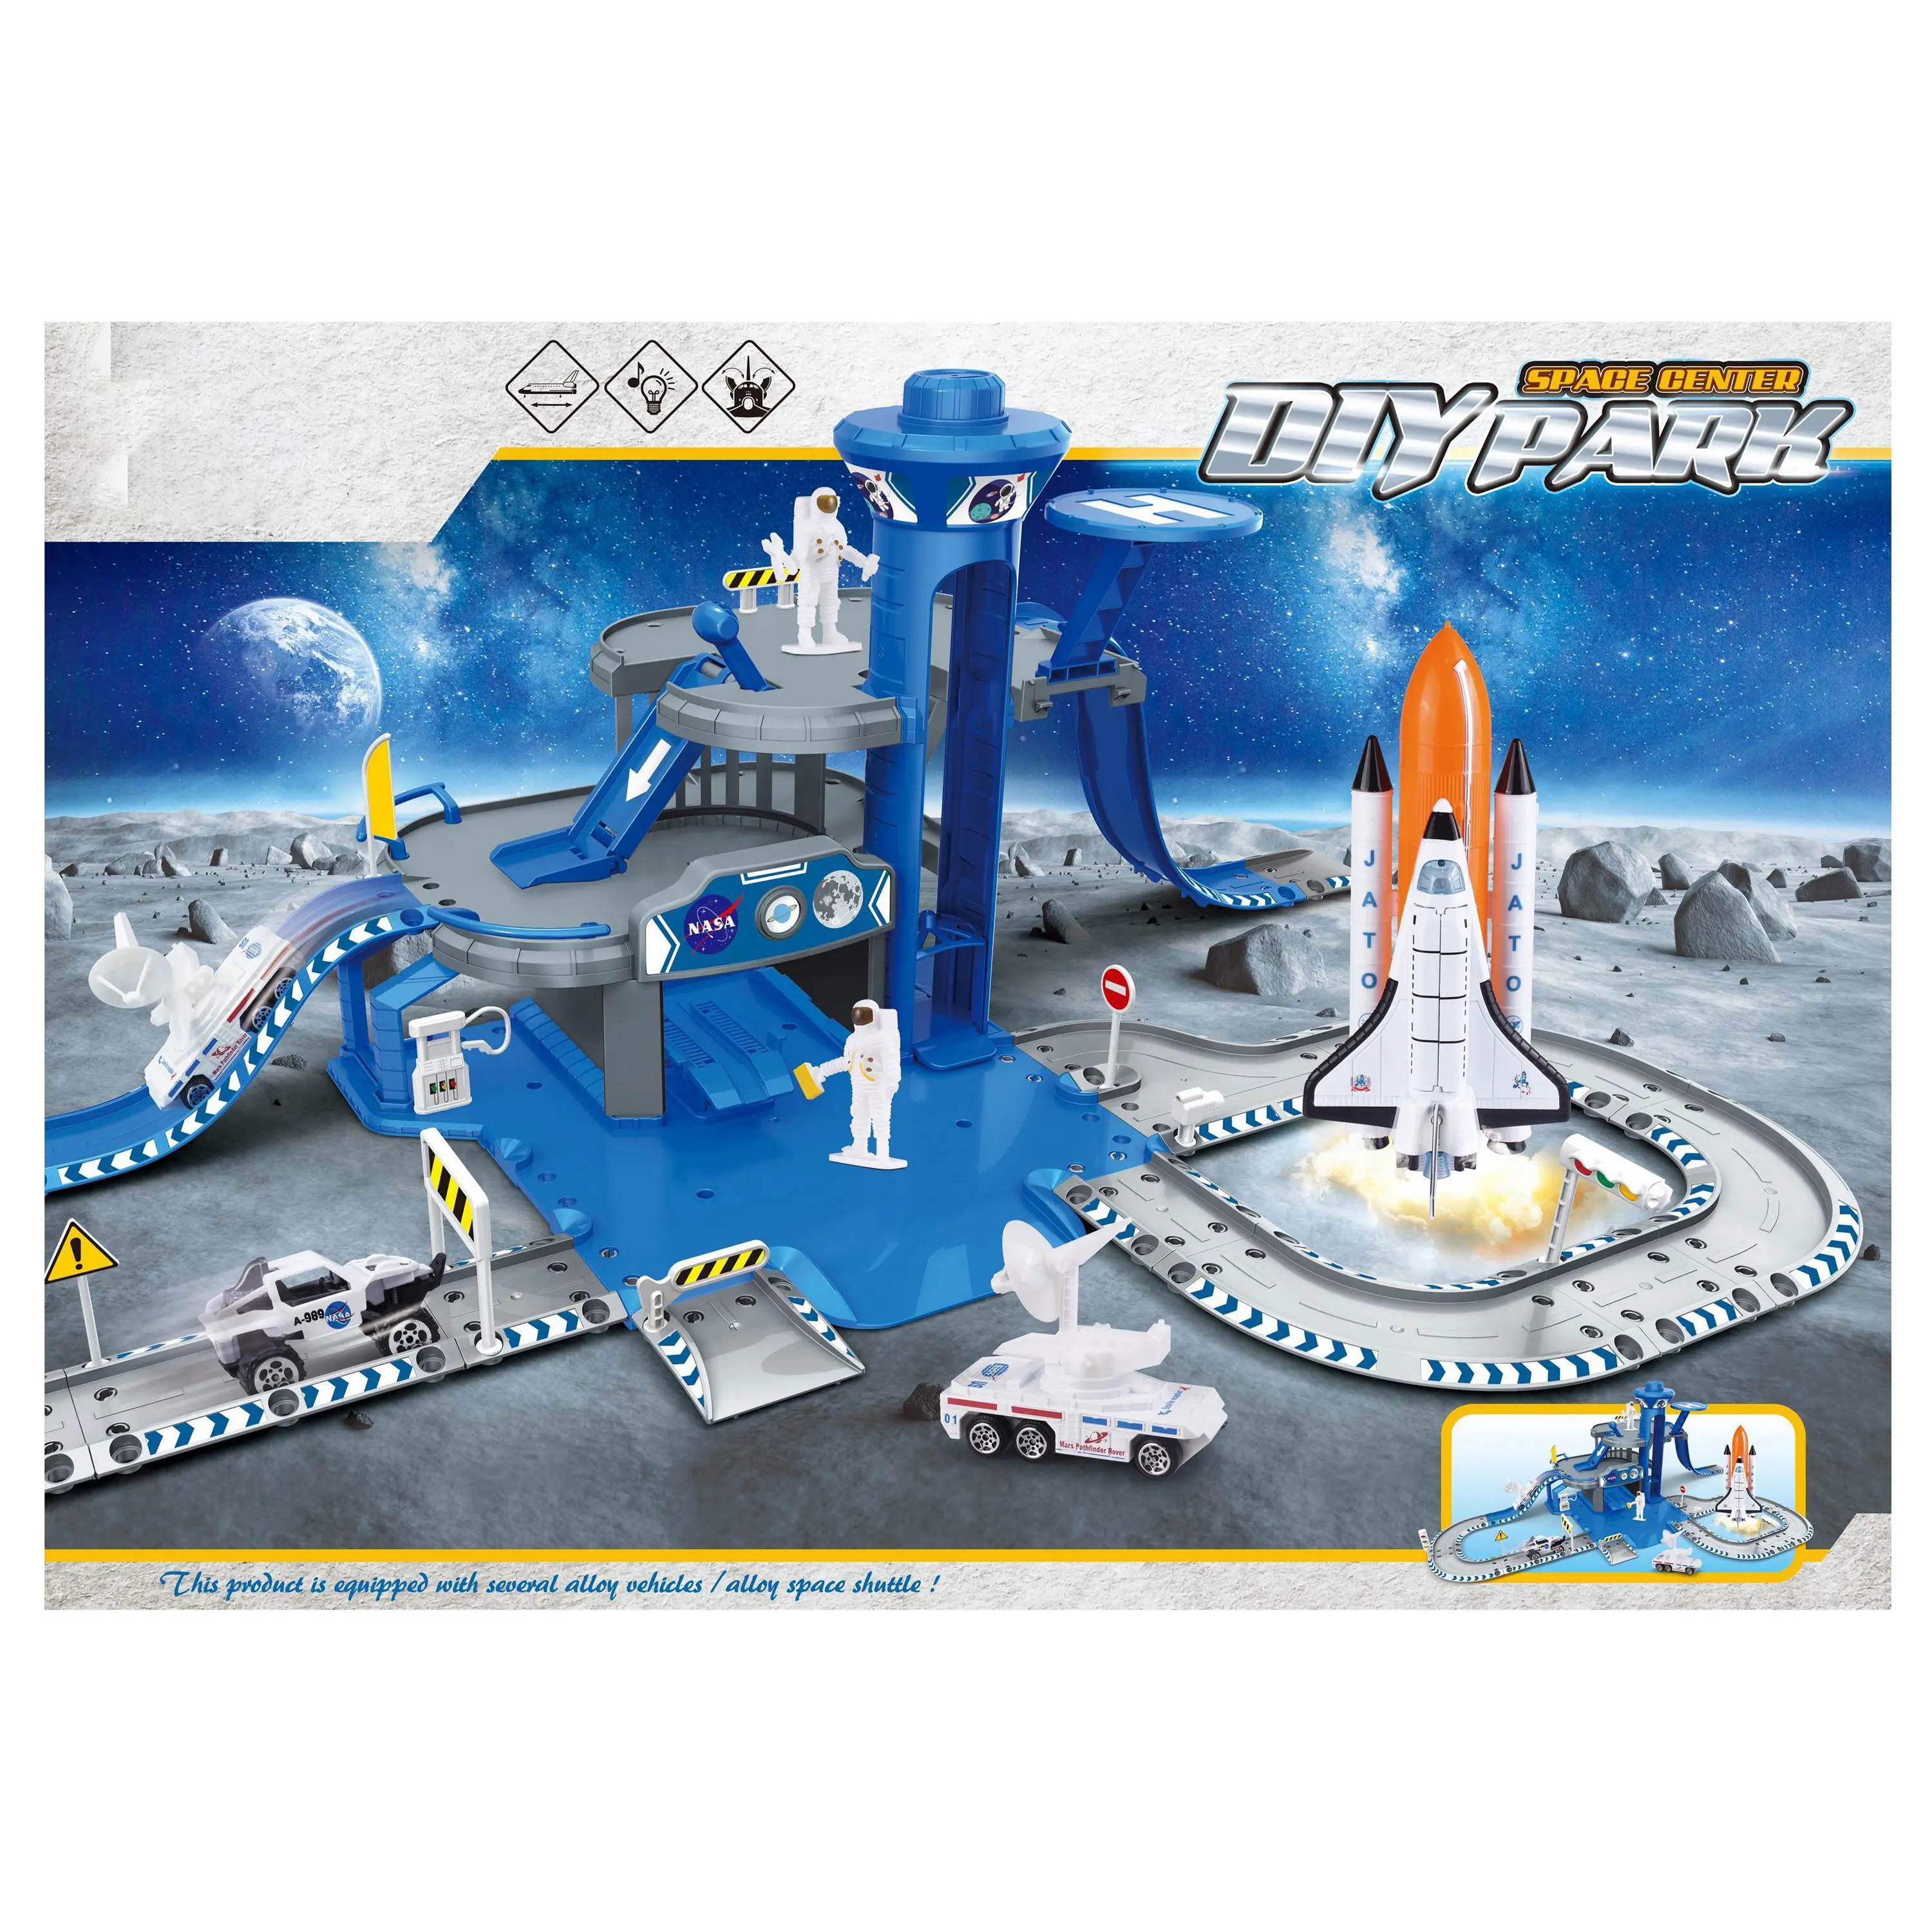 Alloy Space Complex Parking lot aerospace combination space exploration die cast metal vehicles toys